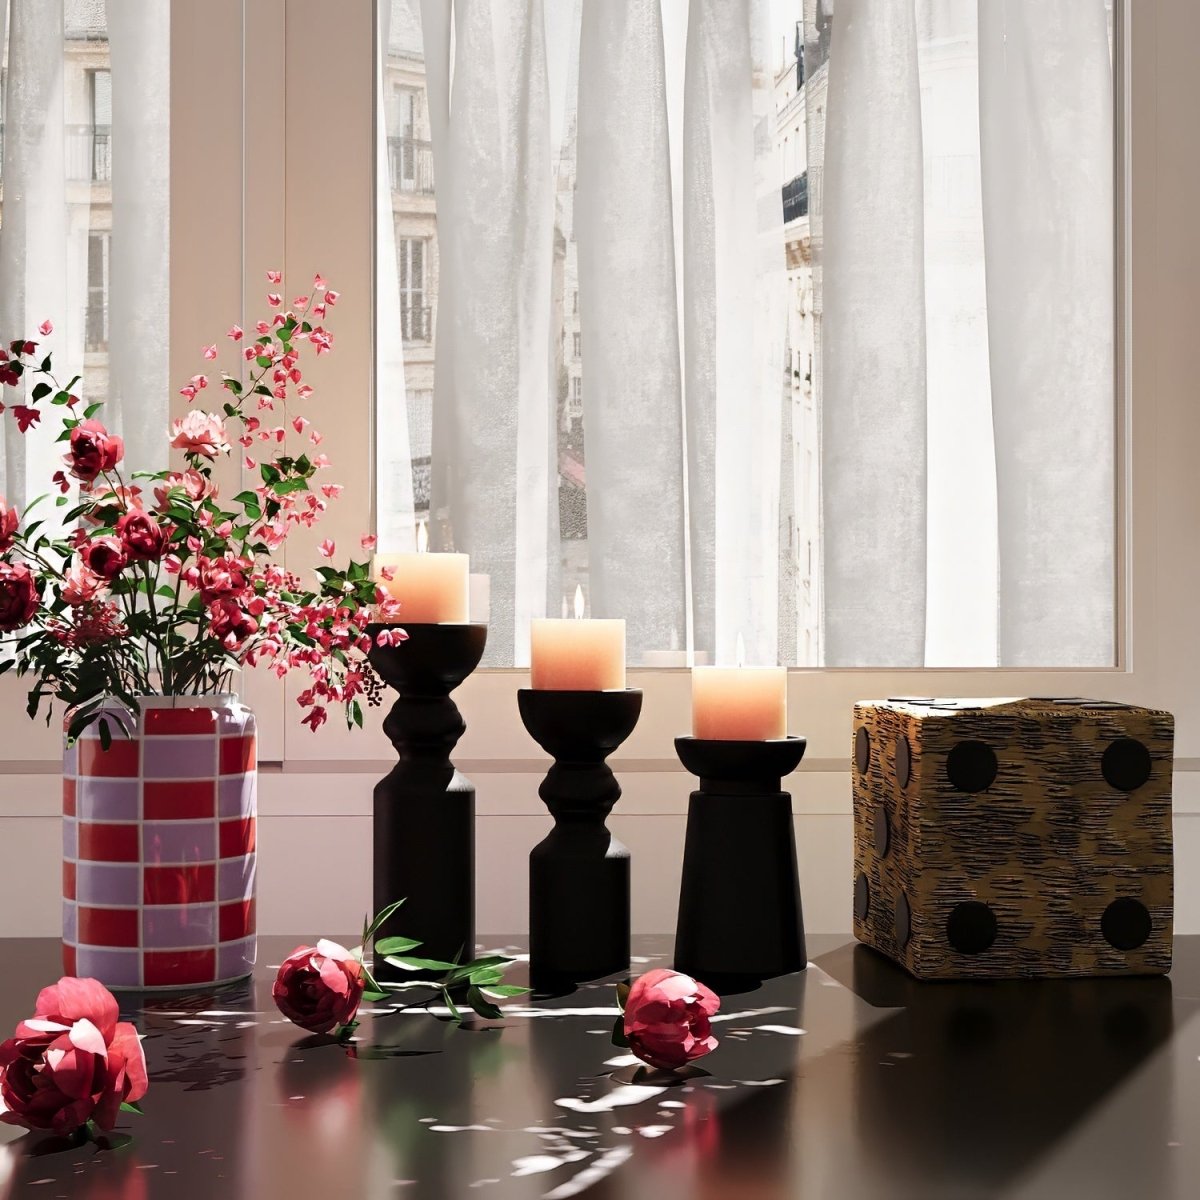 Composez vous-même une compositon déco avec le vase rond à damier en céramique brillante rouge et des bougeoirs modernes